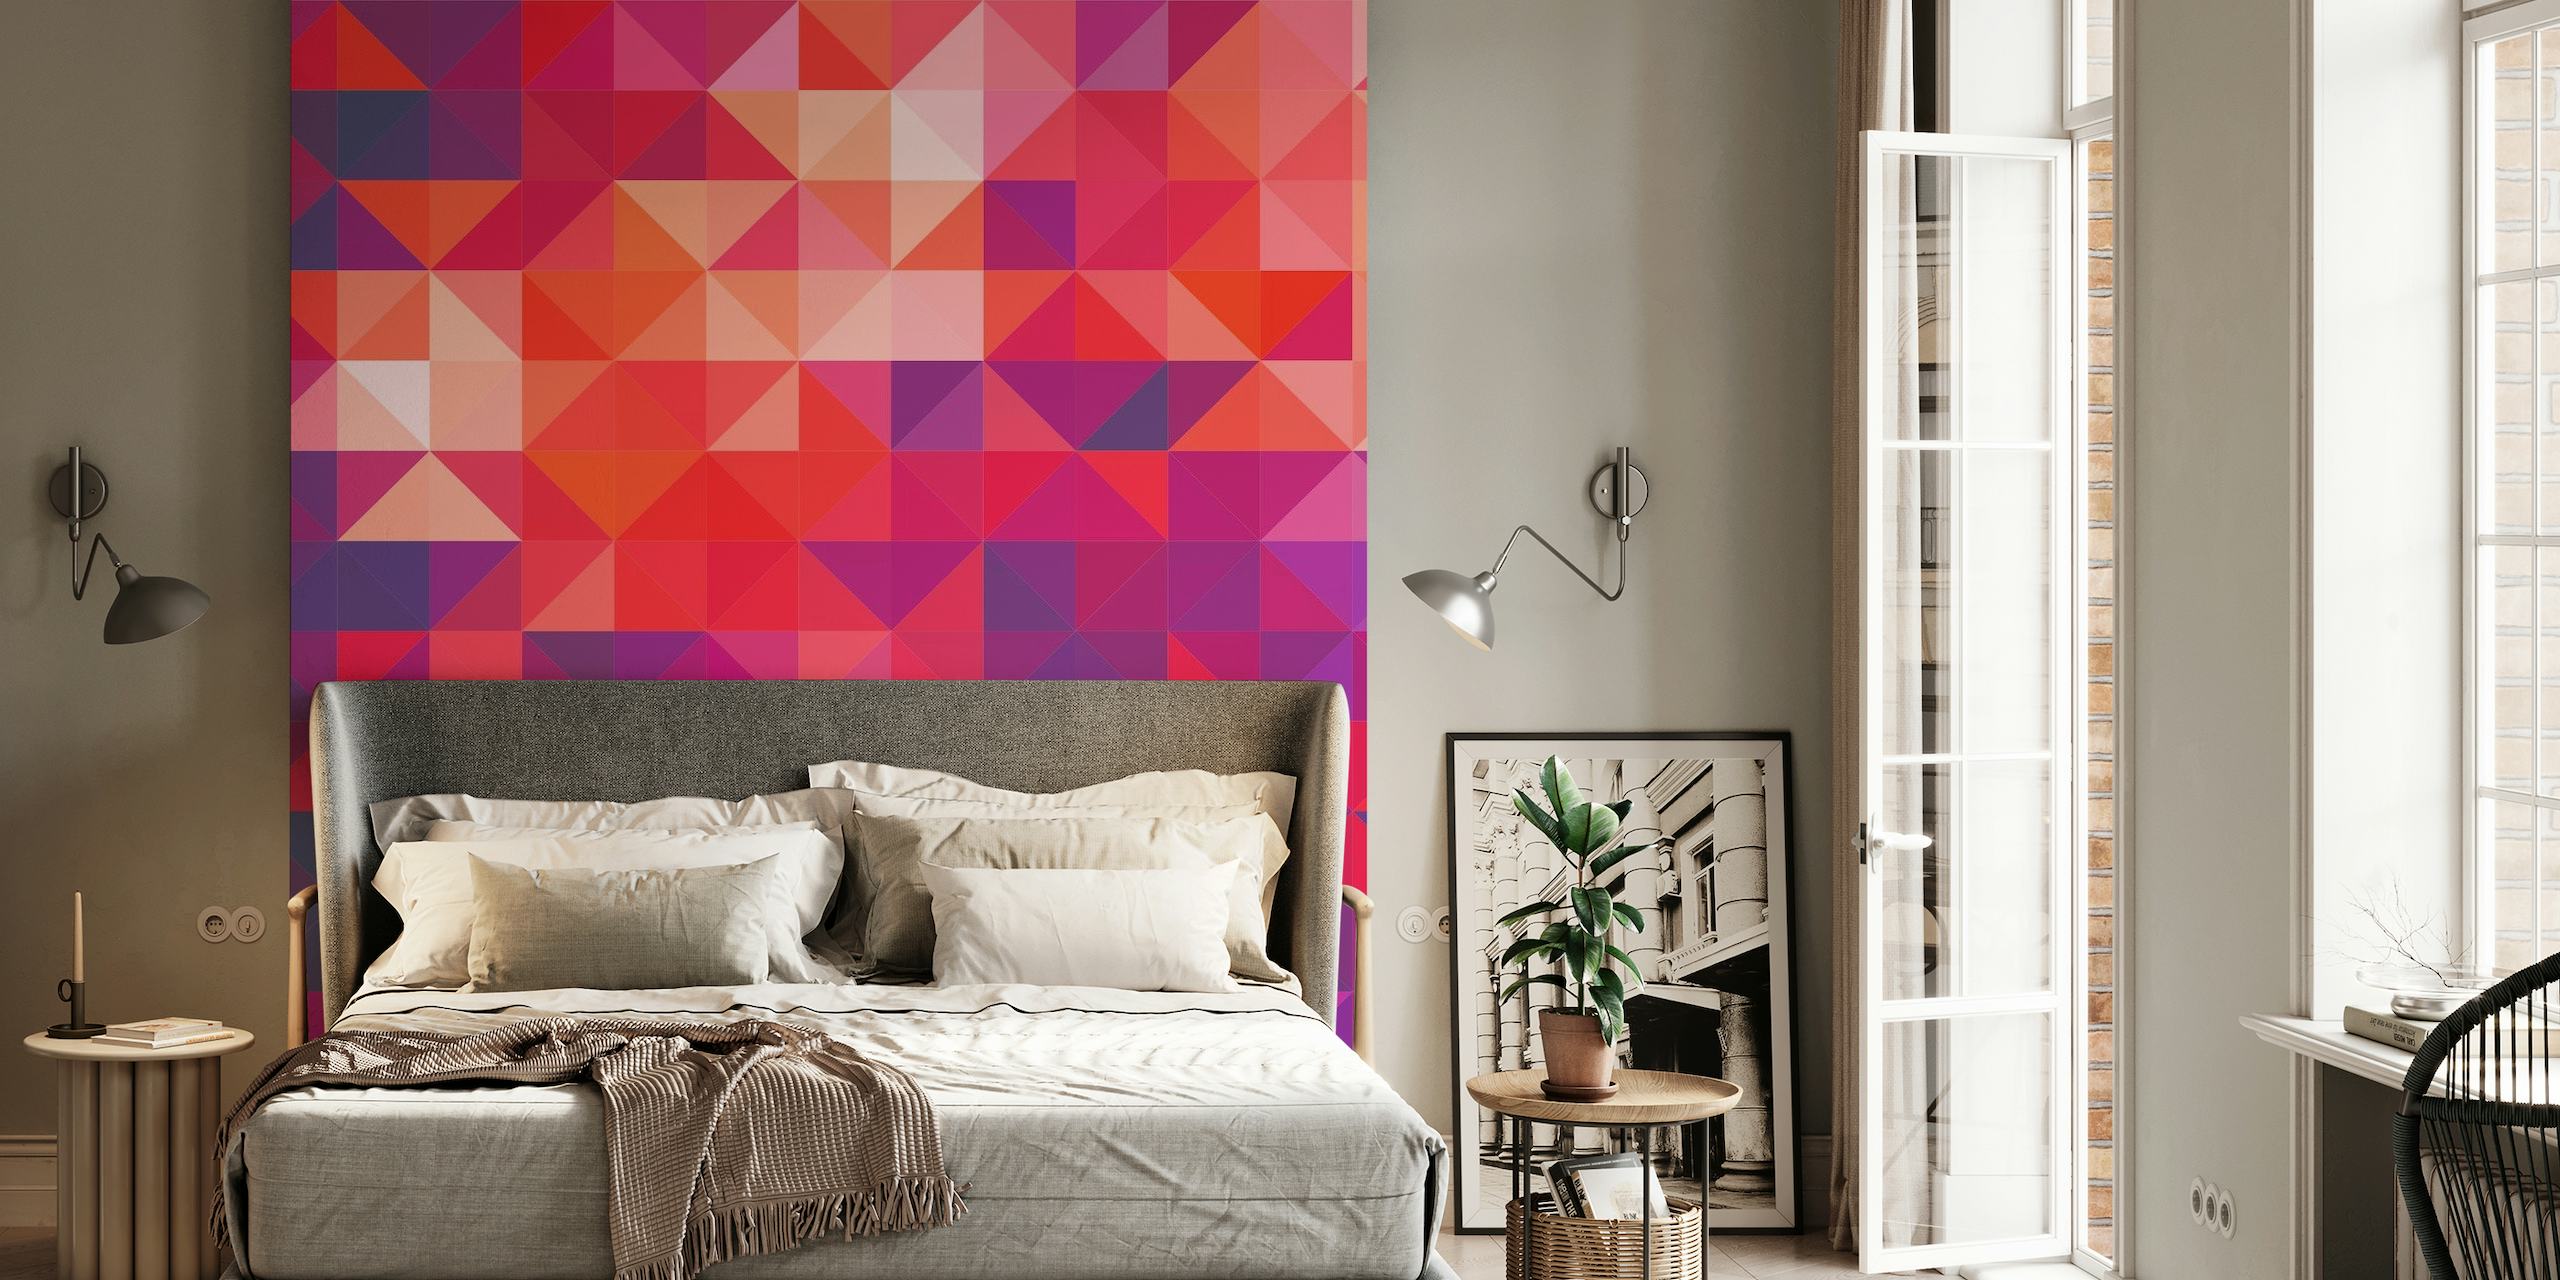 Fototapete mit geometrischem Muster mit roten, violetten und rosa Dreiecken